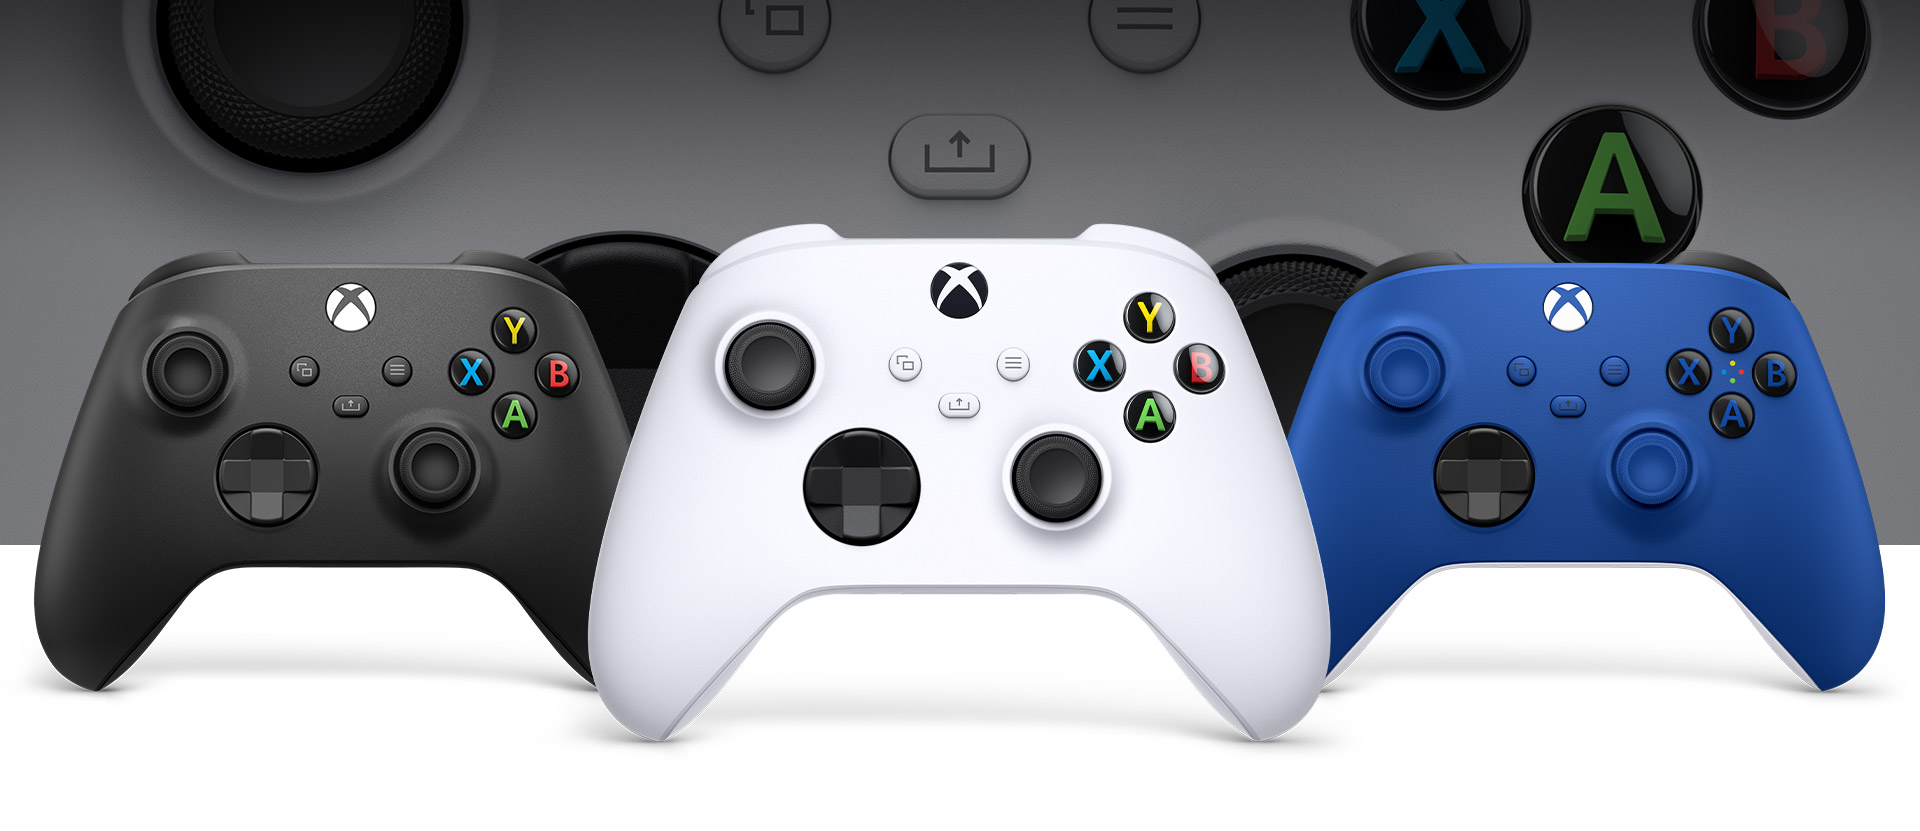 Comando Xbox em Branco Robot à frente, com um comando em Preto Carbono à esquerda e um comando em Azul Choque à direita